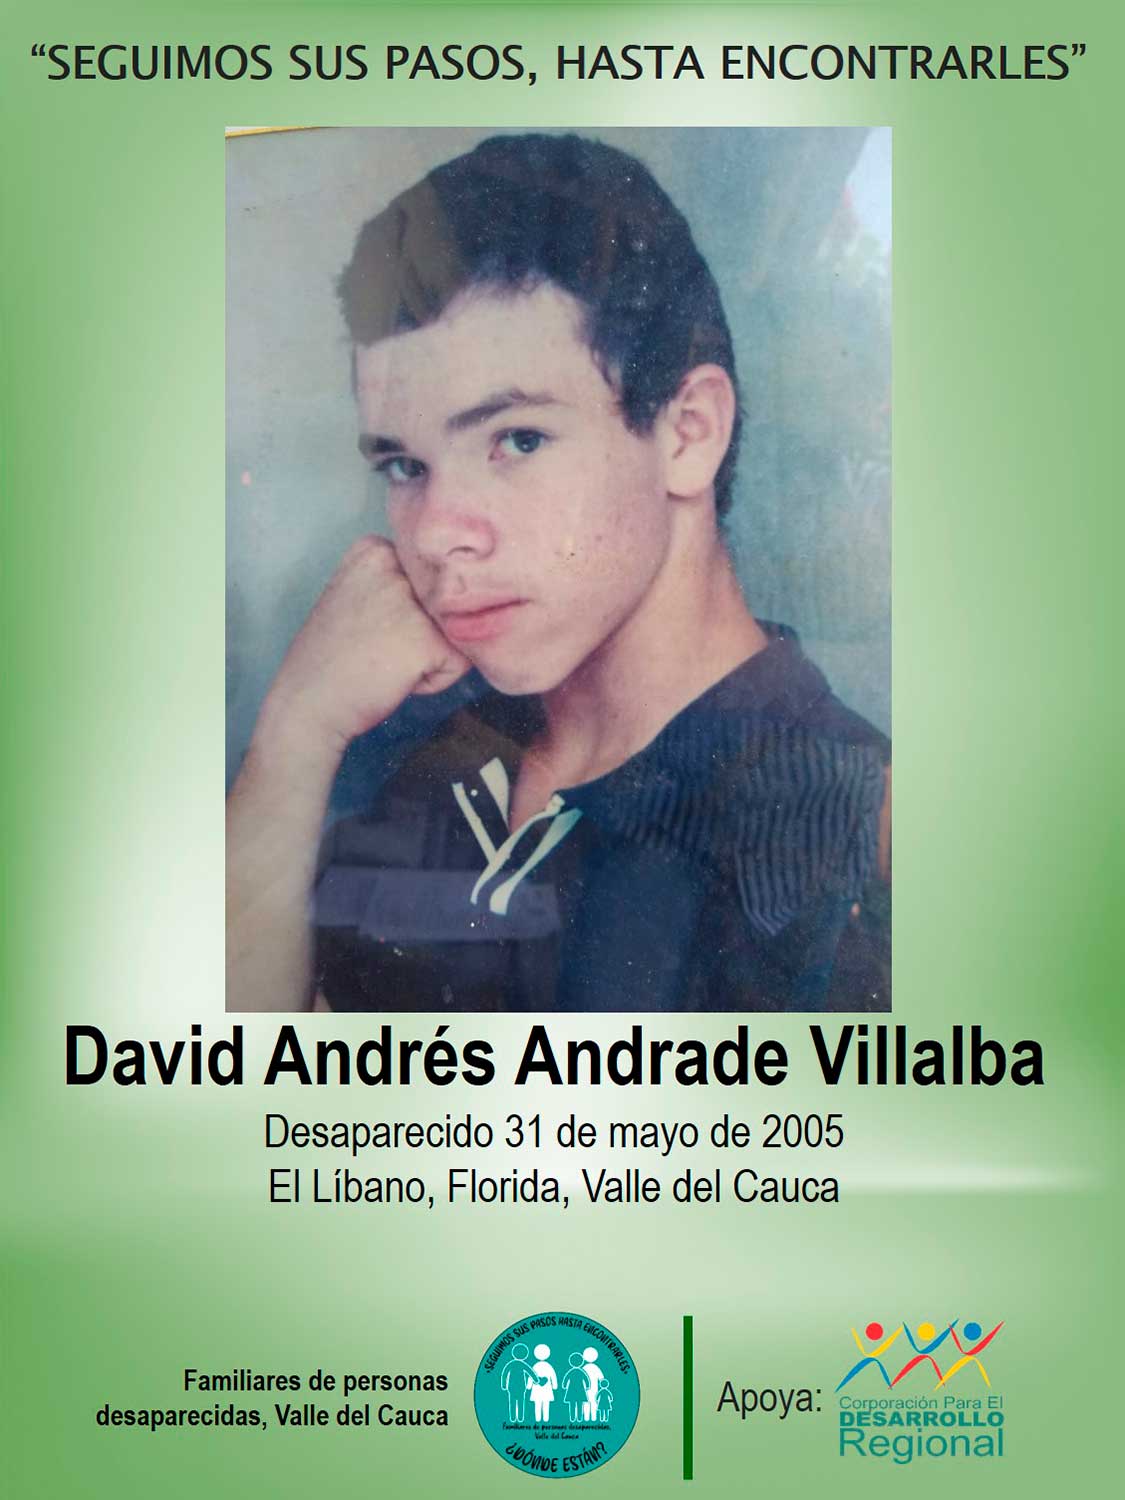 David Andrés Andrade Villalba